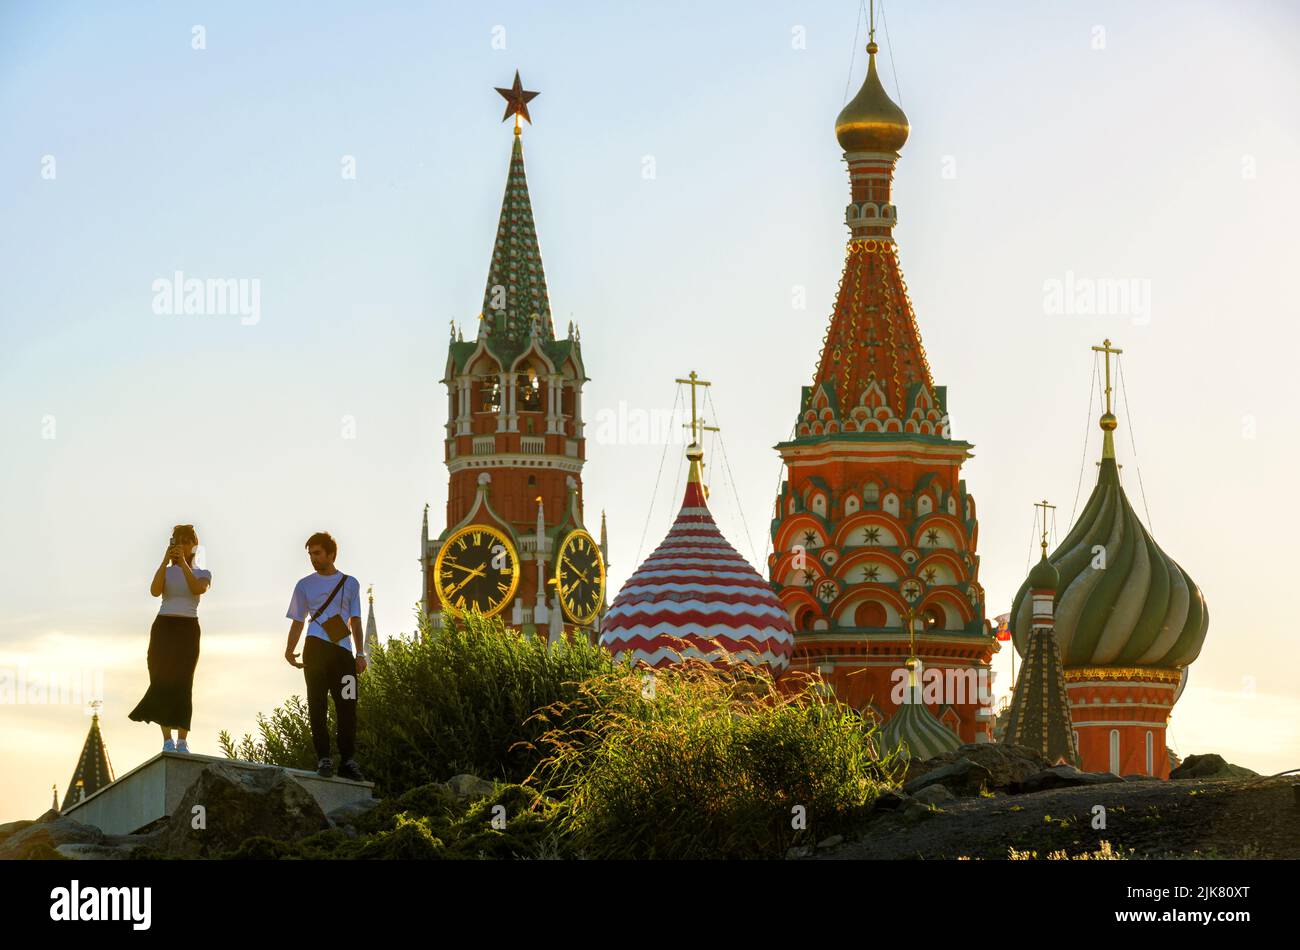 Moscou - 28 juin 2022 : les gens marchent dans le parc paysagé de Zaryadye près du Kremlin et de la cathédrale Saint-Basile, Moscou, Russie. Cet endroit est une attraction touristique Banque D'Images